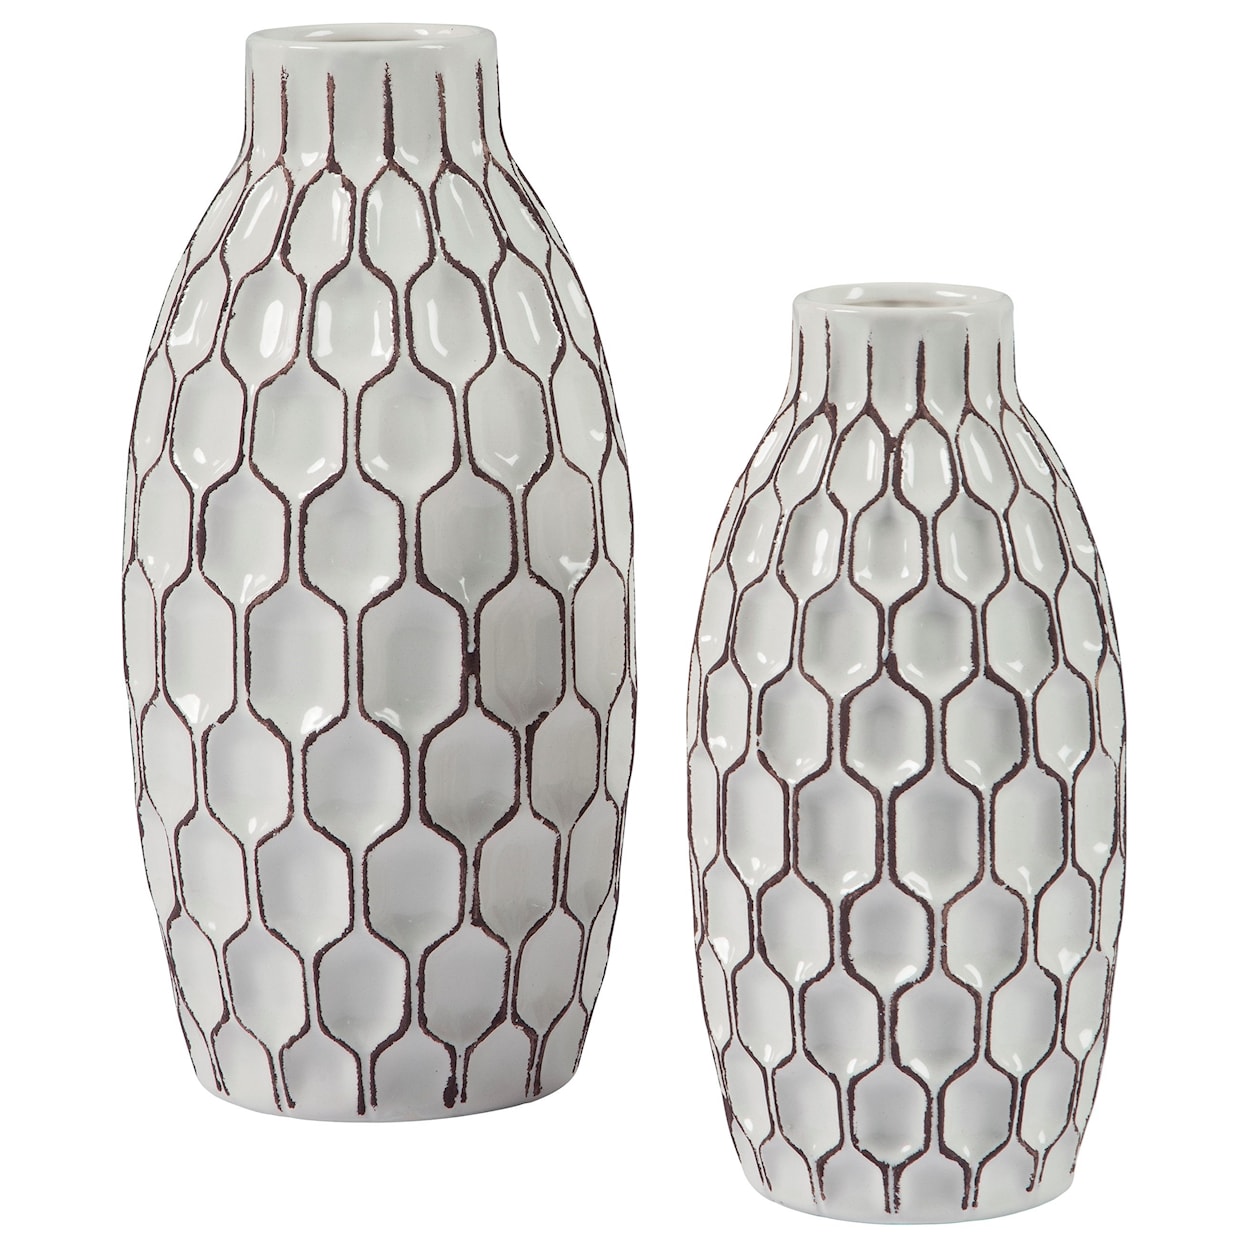 Benchcraft Accents 2-Piece Dionna White Vase Set